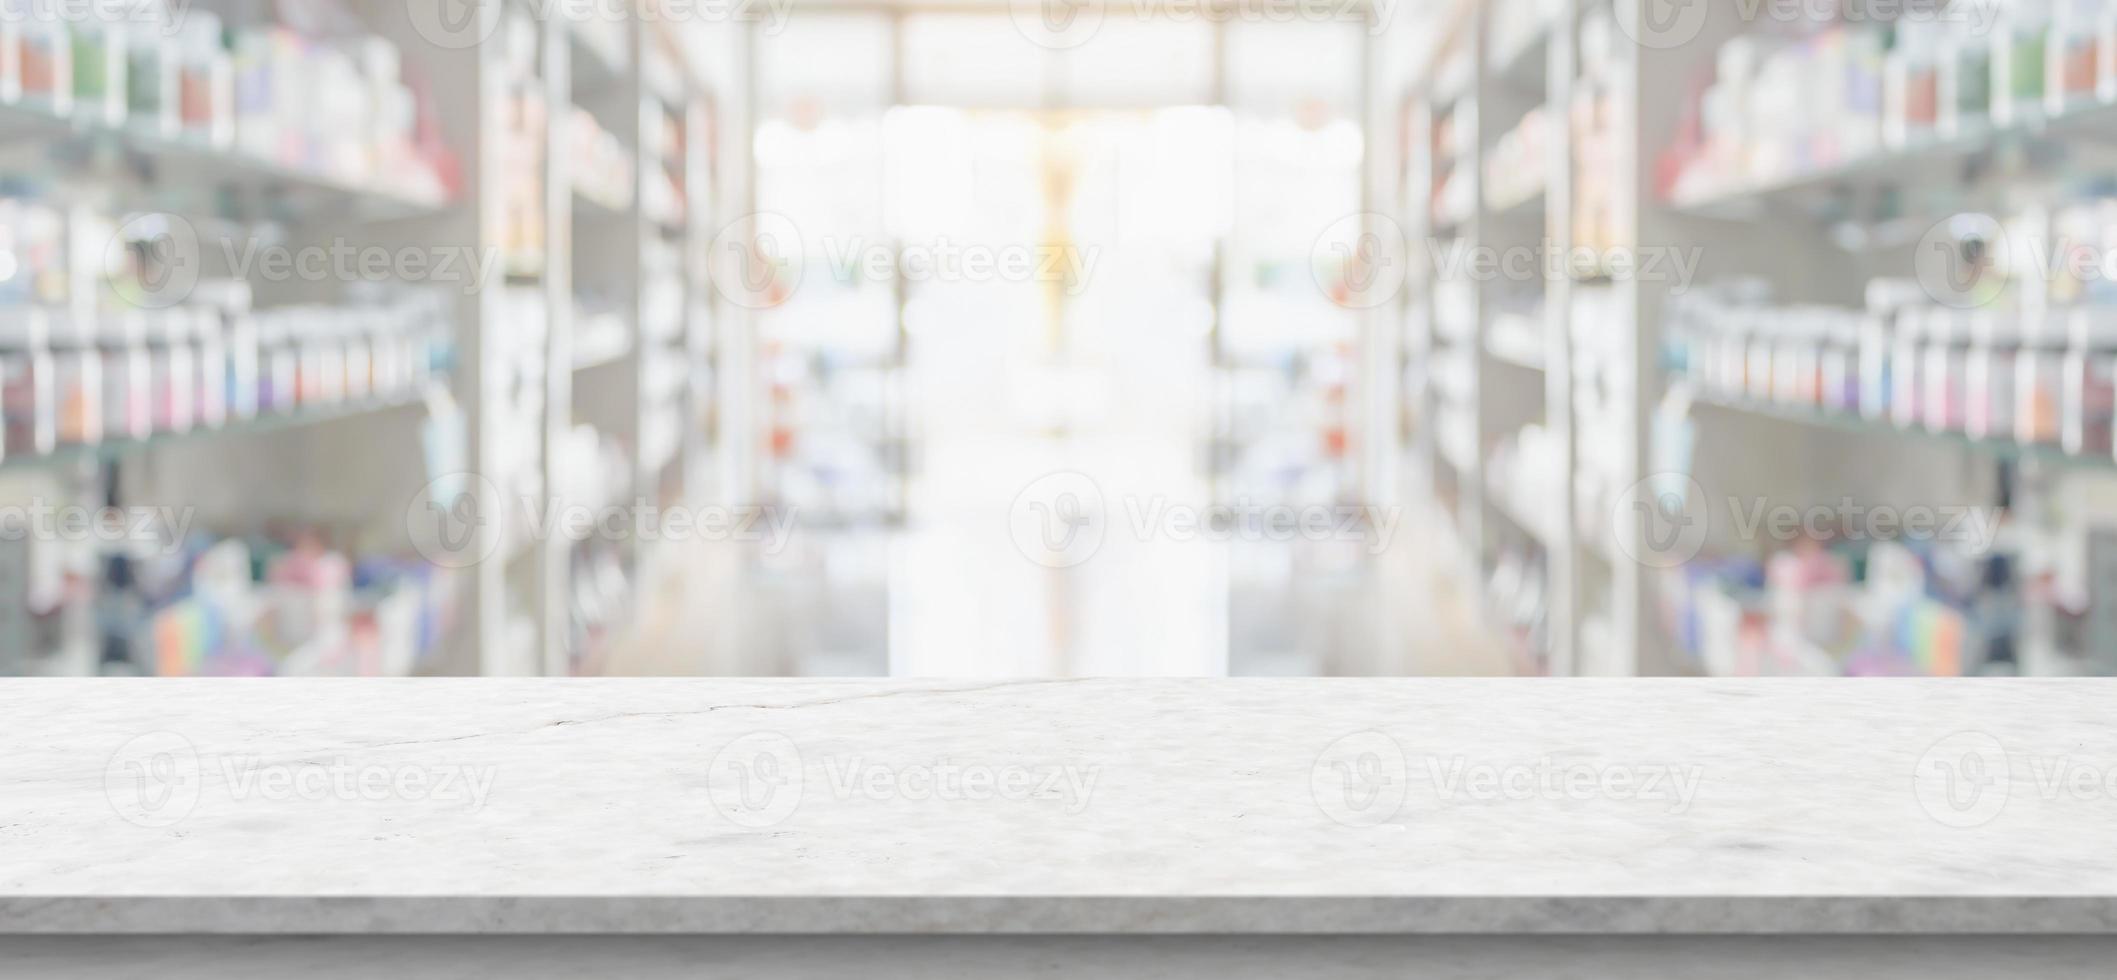 Comptoir en marbre blanc vide avec arrière-plan flou des étagères de la pharmacie de la pharmacie photo